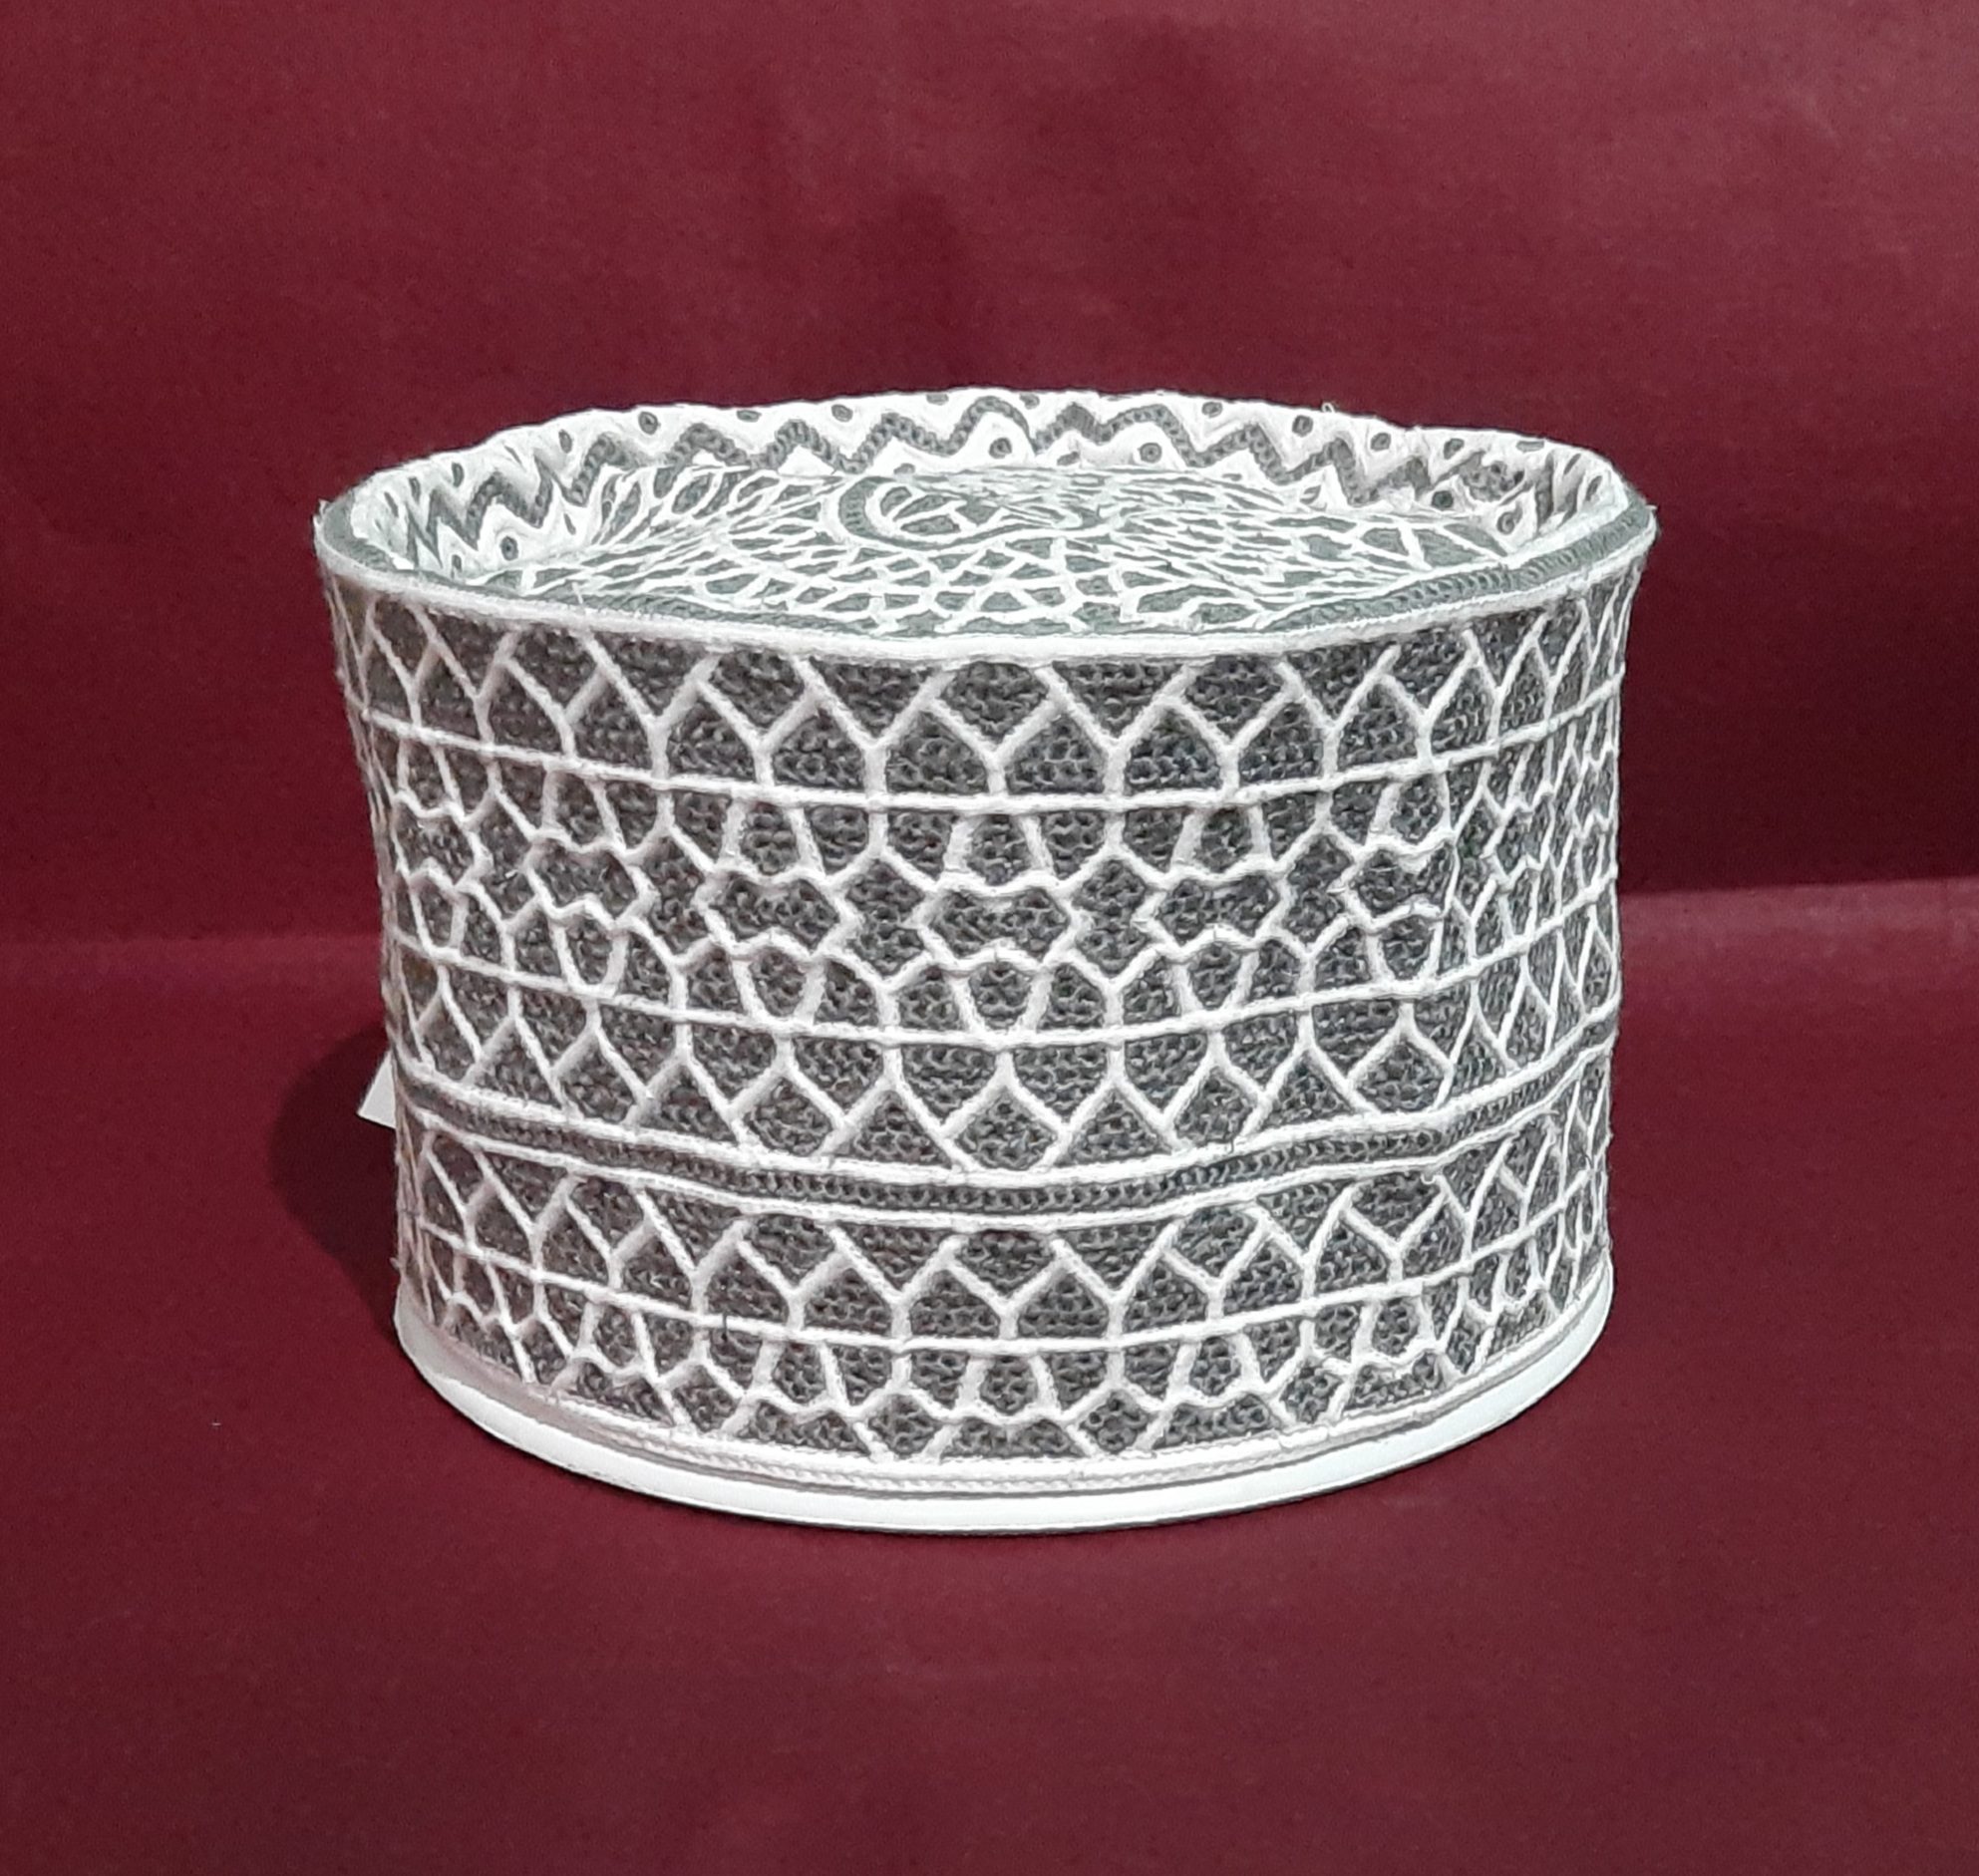 New Original Omani Barkati Cap Soft Cotton Material modal no. 102 Size 21 (Barkati Topi)